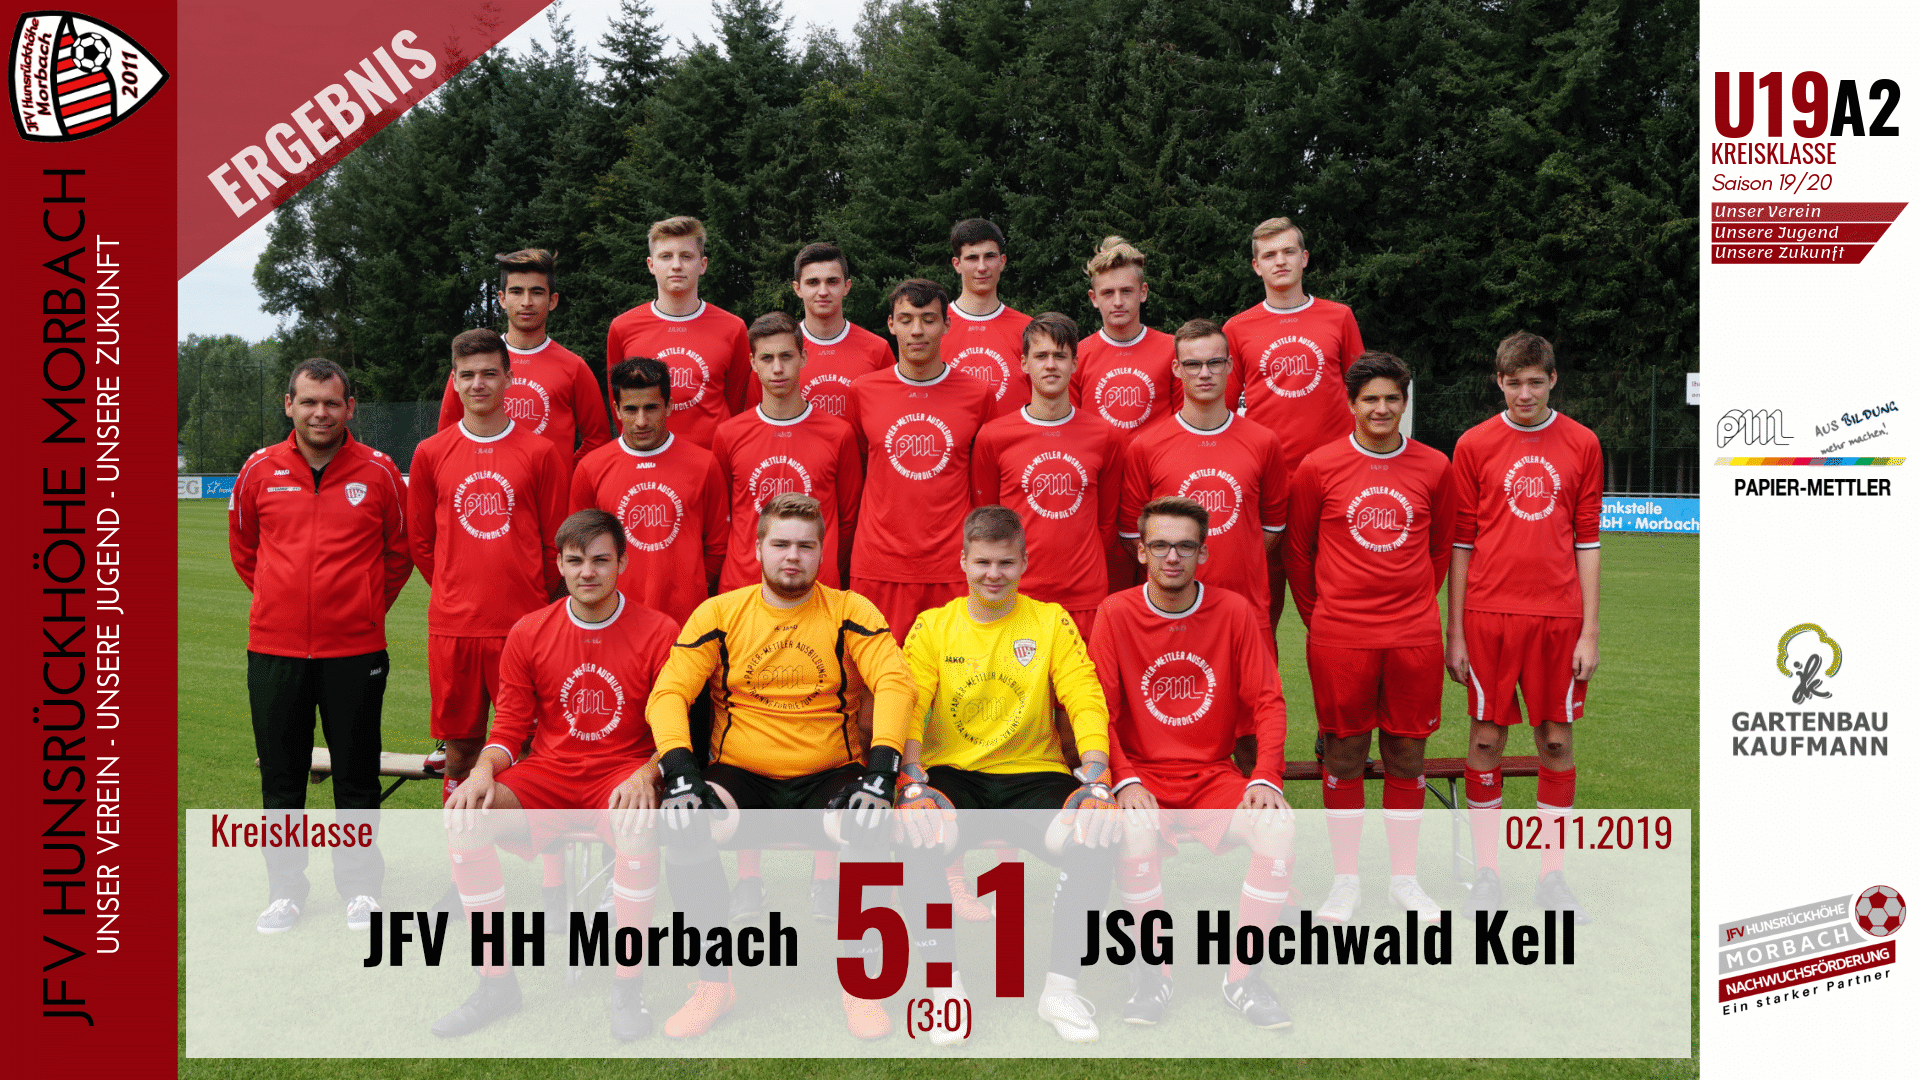 Read more about the article U19 A2: JFV Hunsrückhöhe Morbach – JSG Hochwald Kell 5:1 (3:0)